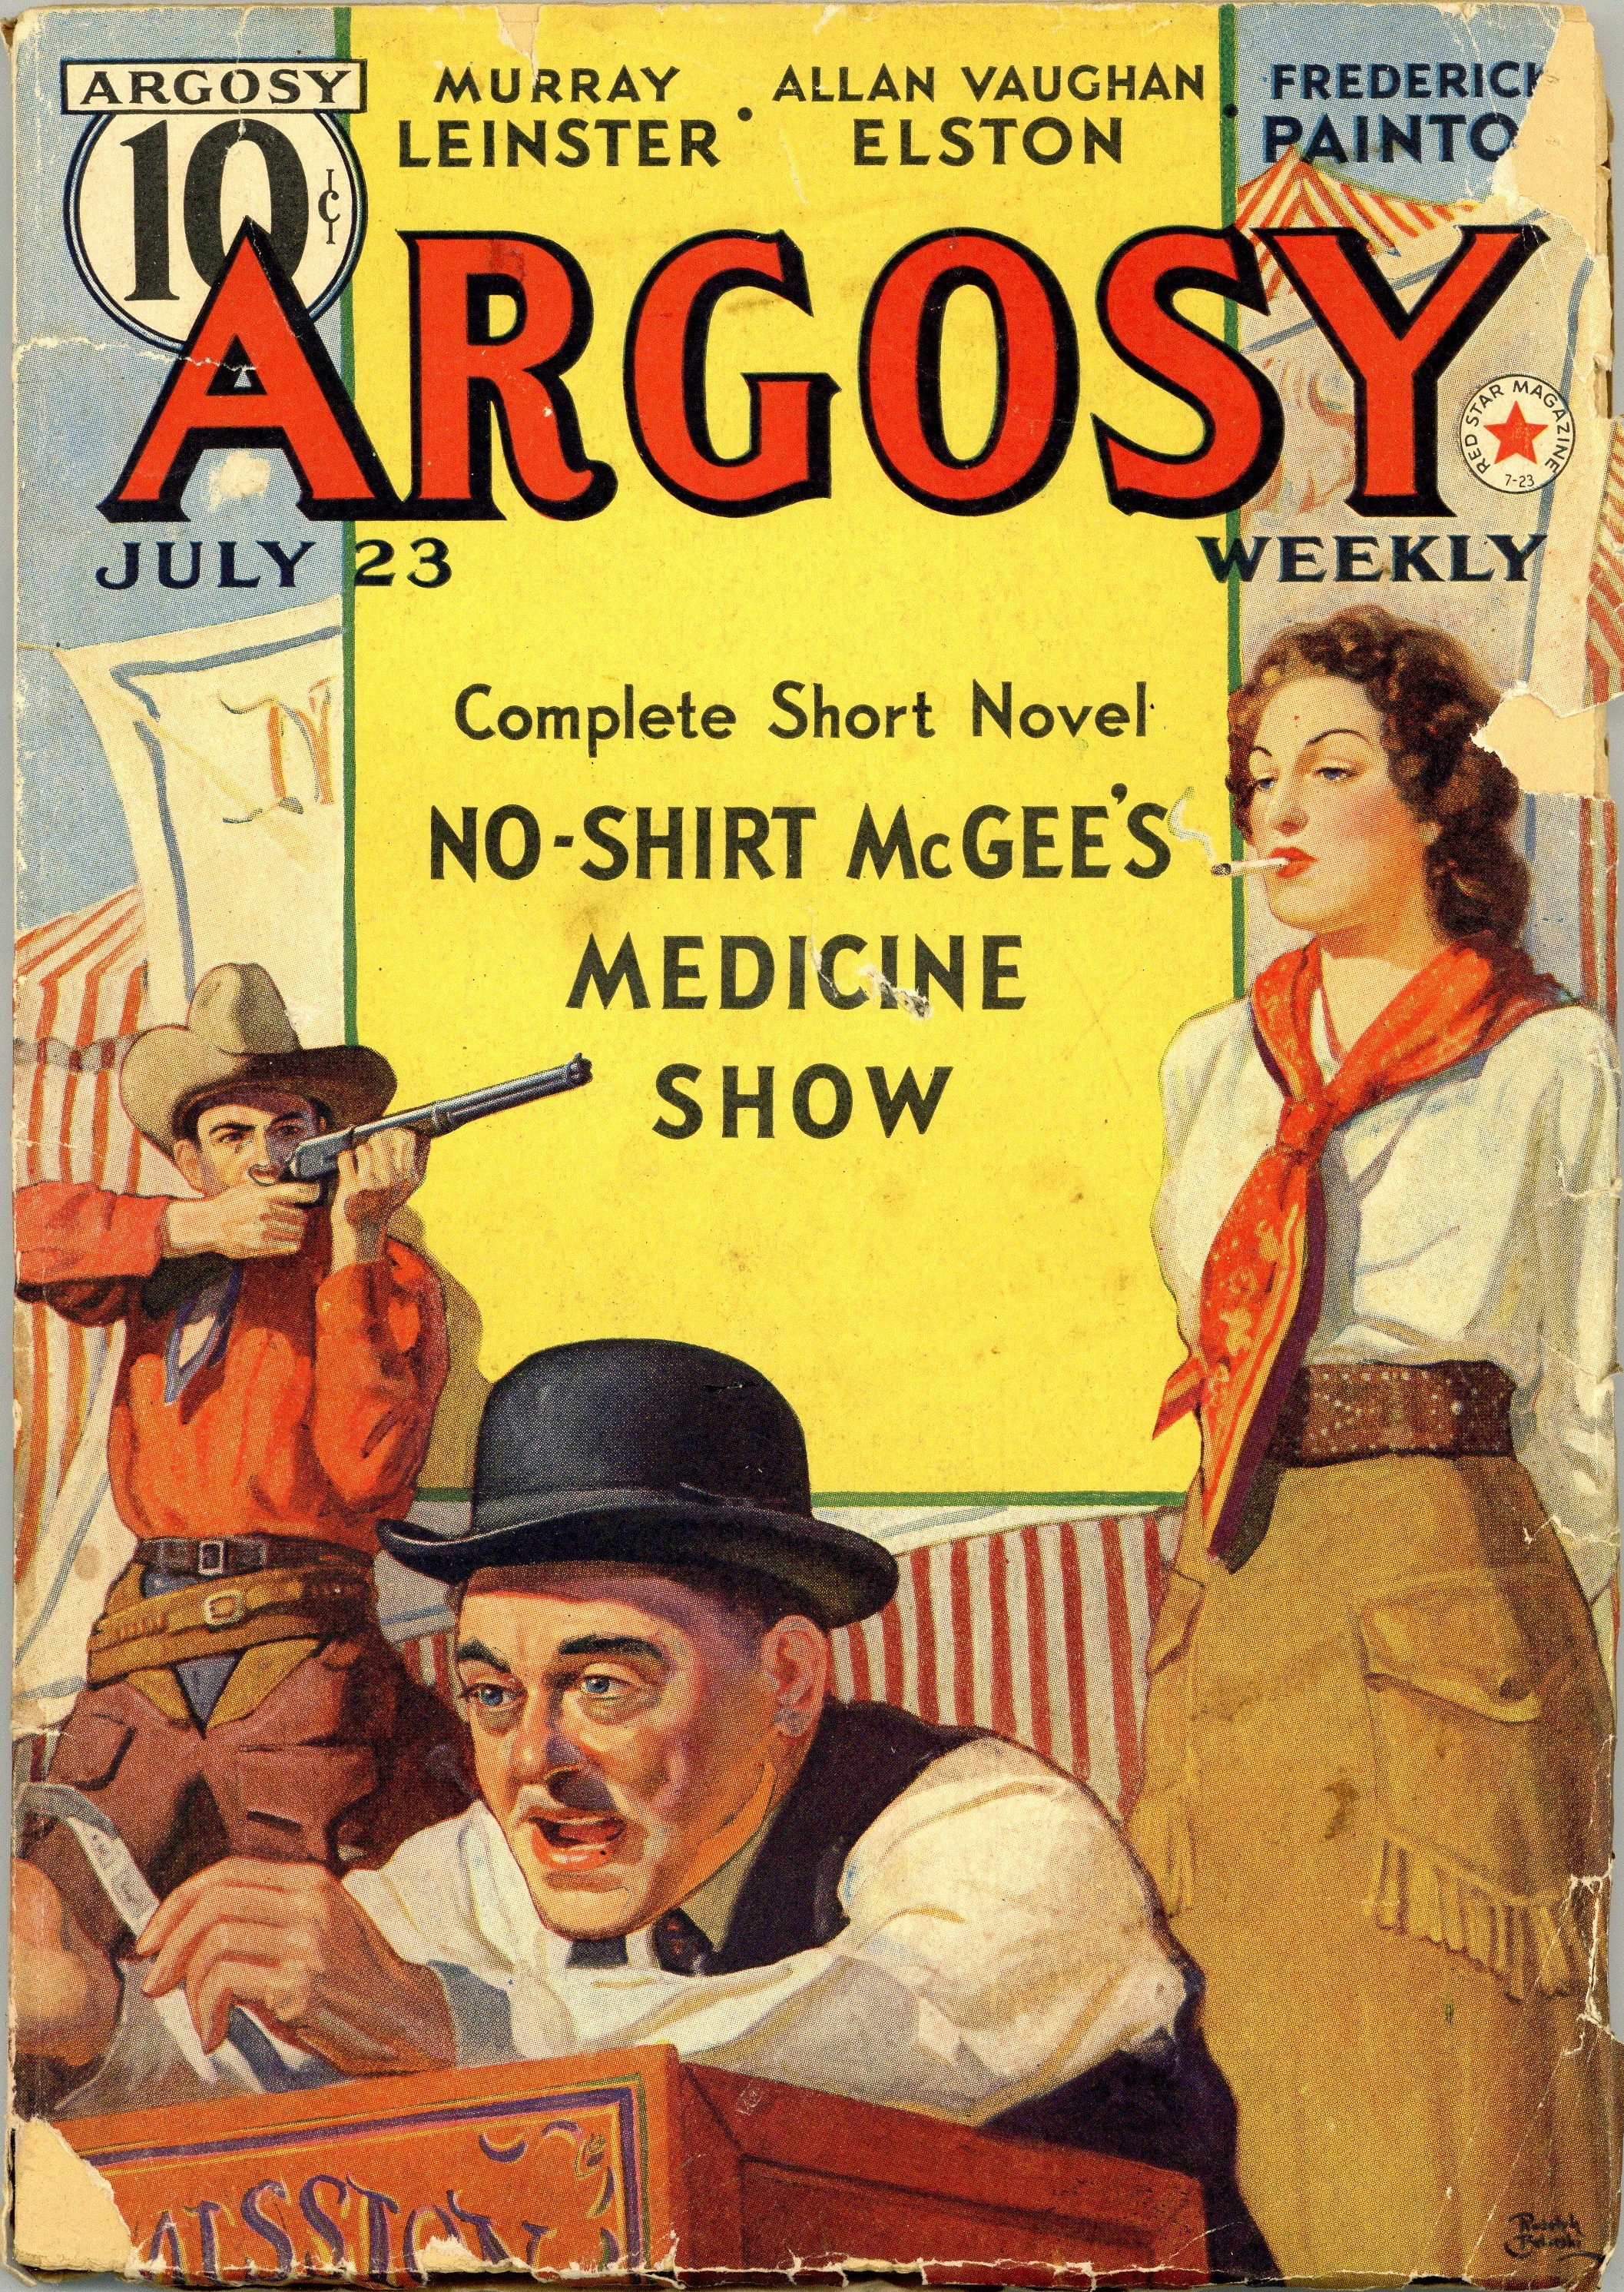 Argosy Weekly July 23 1938